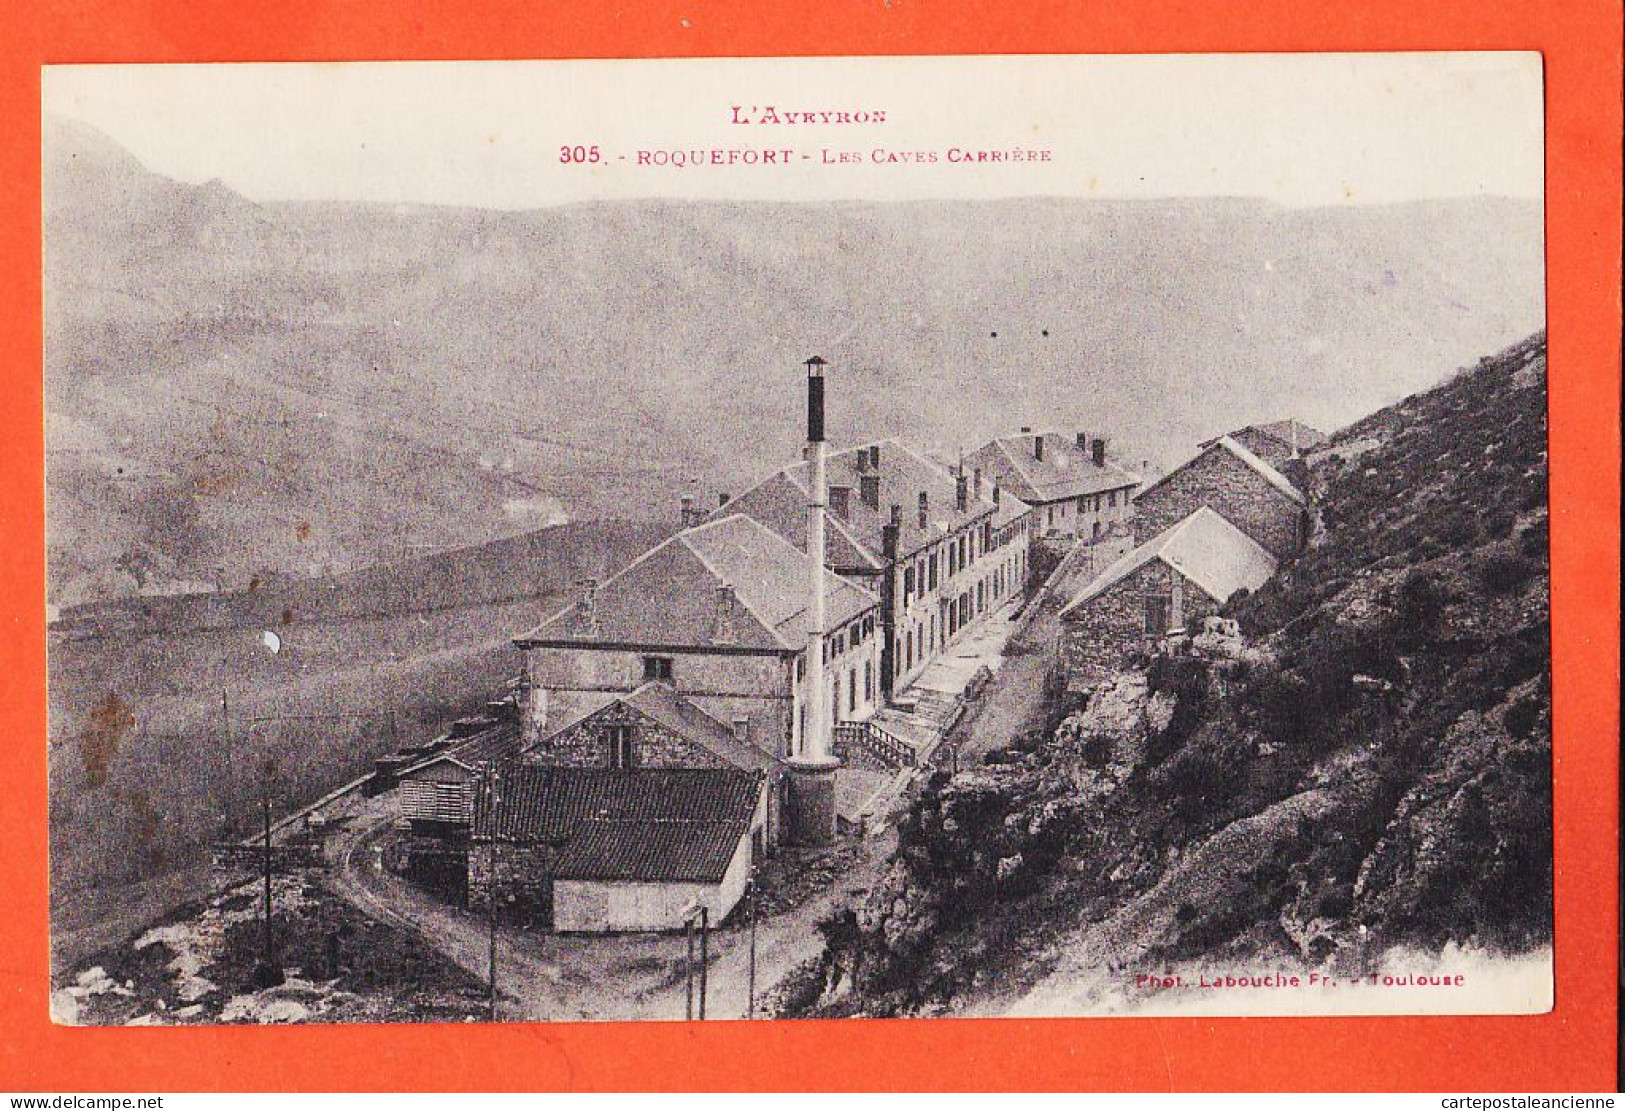 28461 / ROQUEFORT 12-Aveyron Les Caves CARRIERE 1910s LABOUCHE 305 - Roquefort